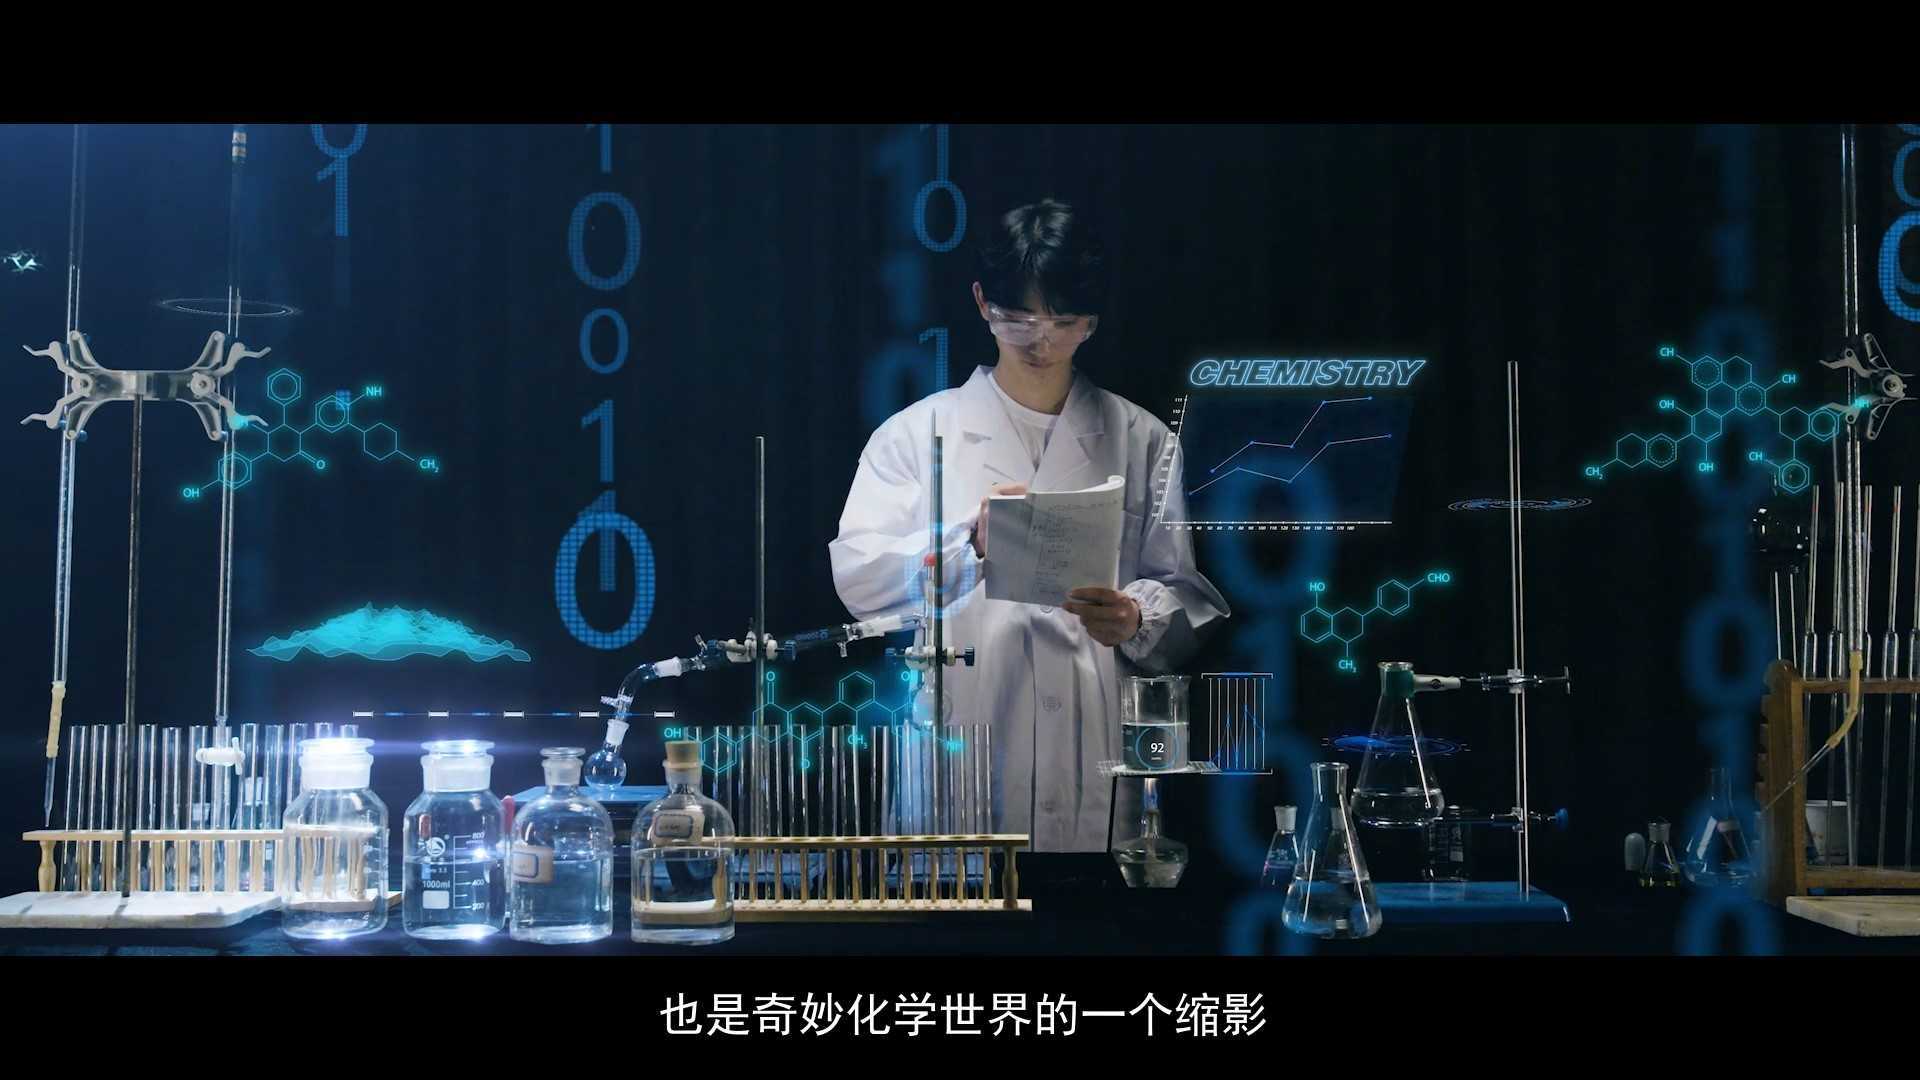 湘大化学学院宣传片《星火》